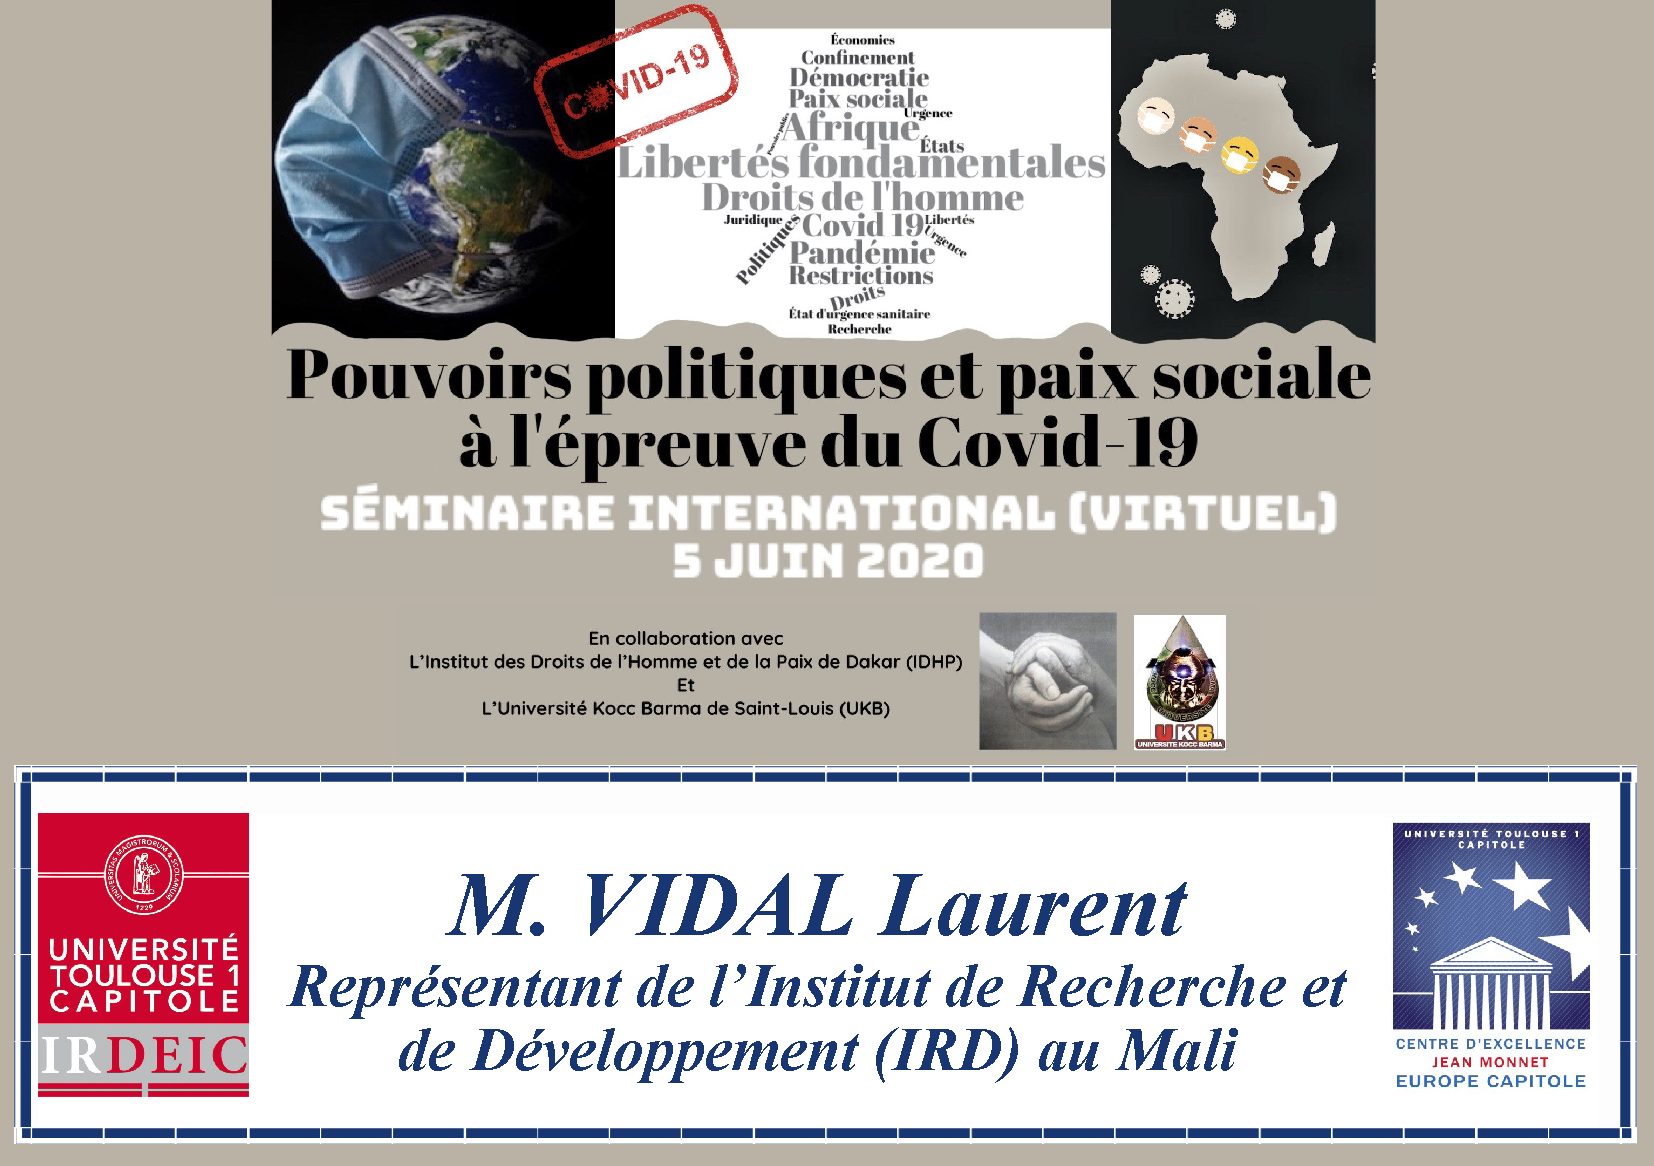 "Perceptions et présences des Etats en Afrique face à la Covid-19", Laurent VIDAL, Représentant de l’Institut de Recherche et de Développement (IRD) au Mali